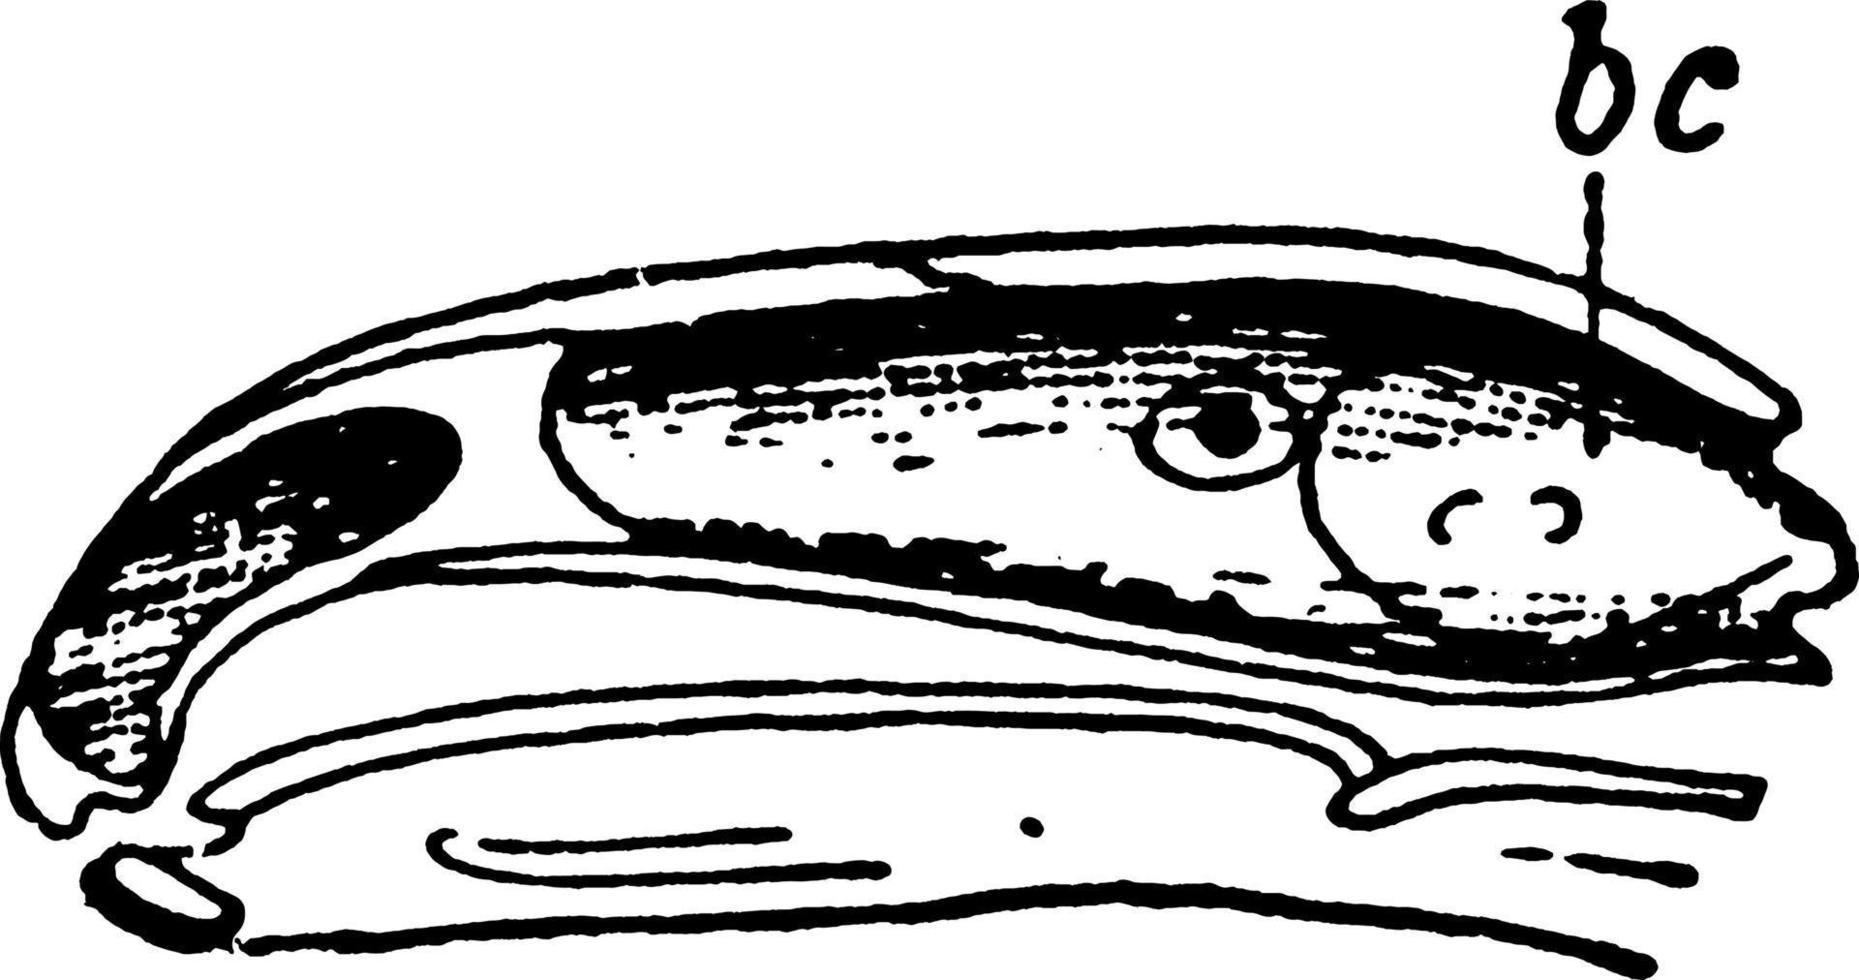 crâne de salamandre de feu ou salamandra maculosa, illustration vintage. vecteur